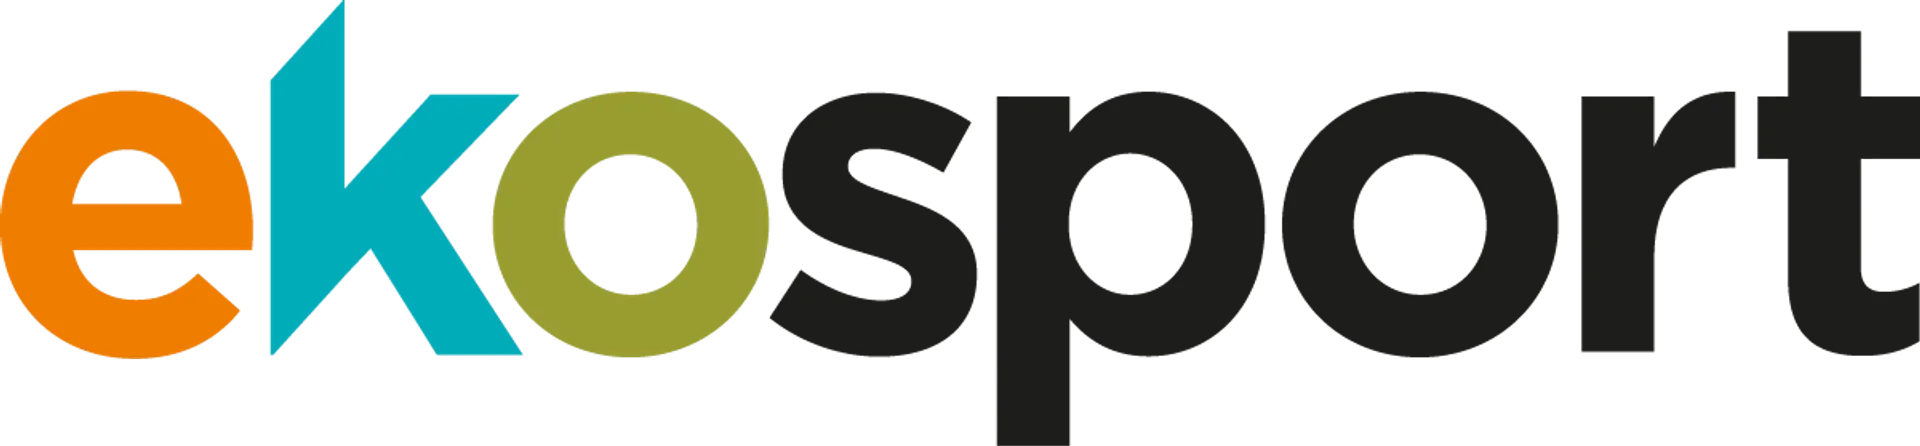 EKOSPORT logo